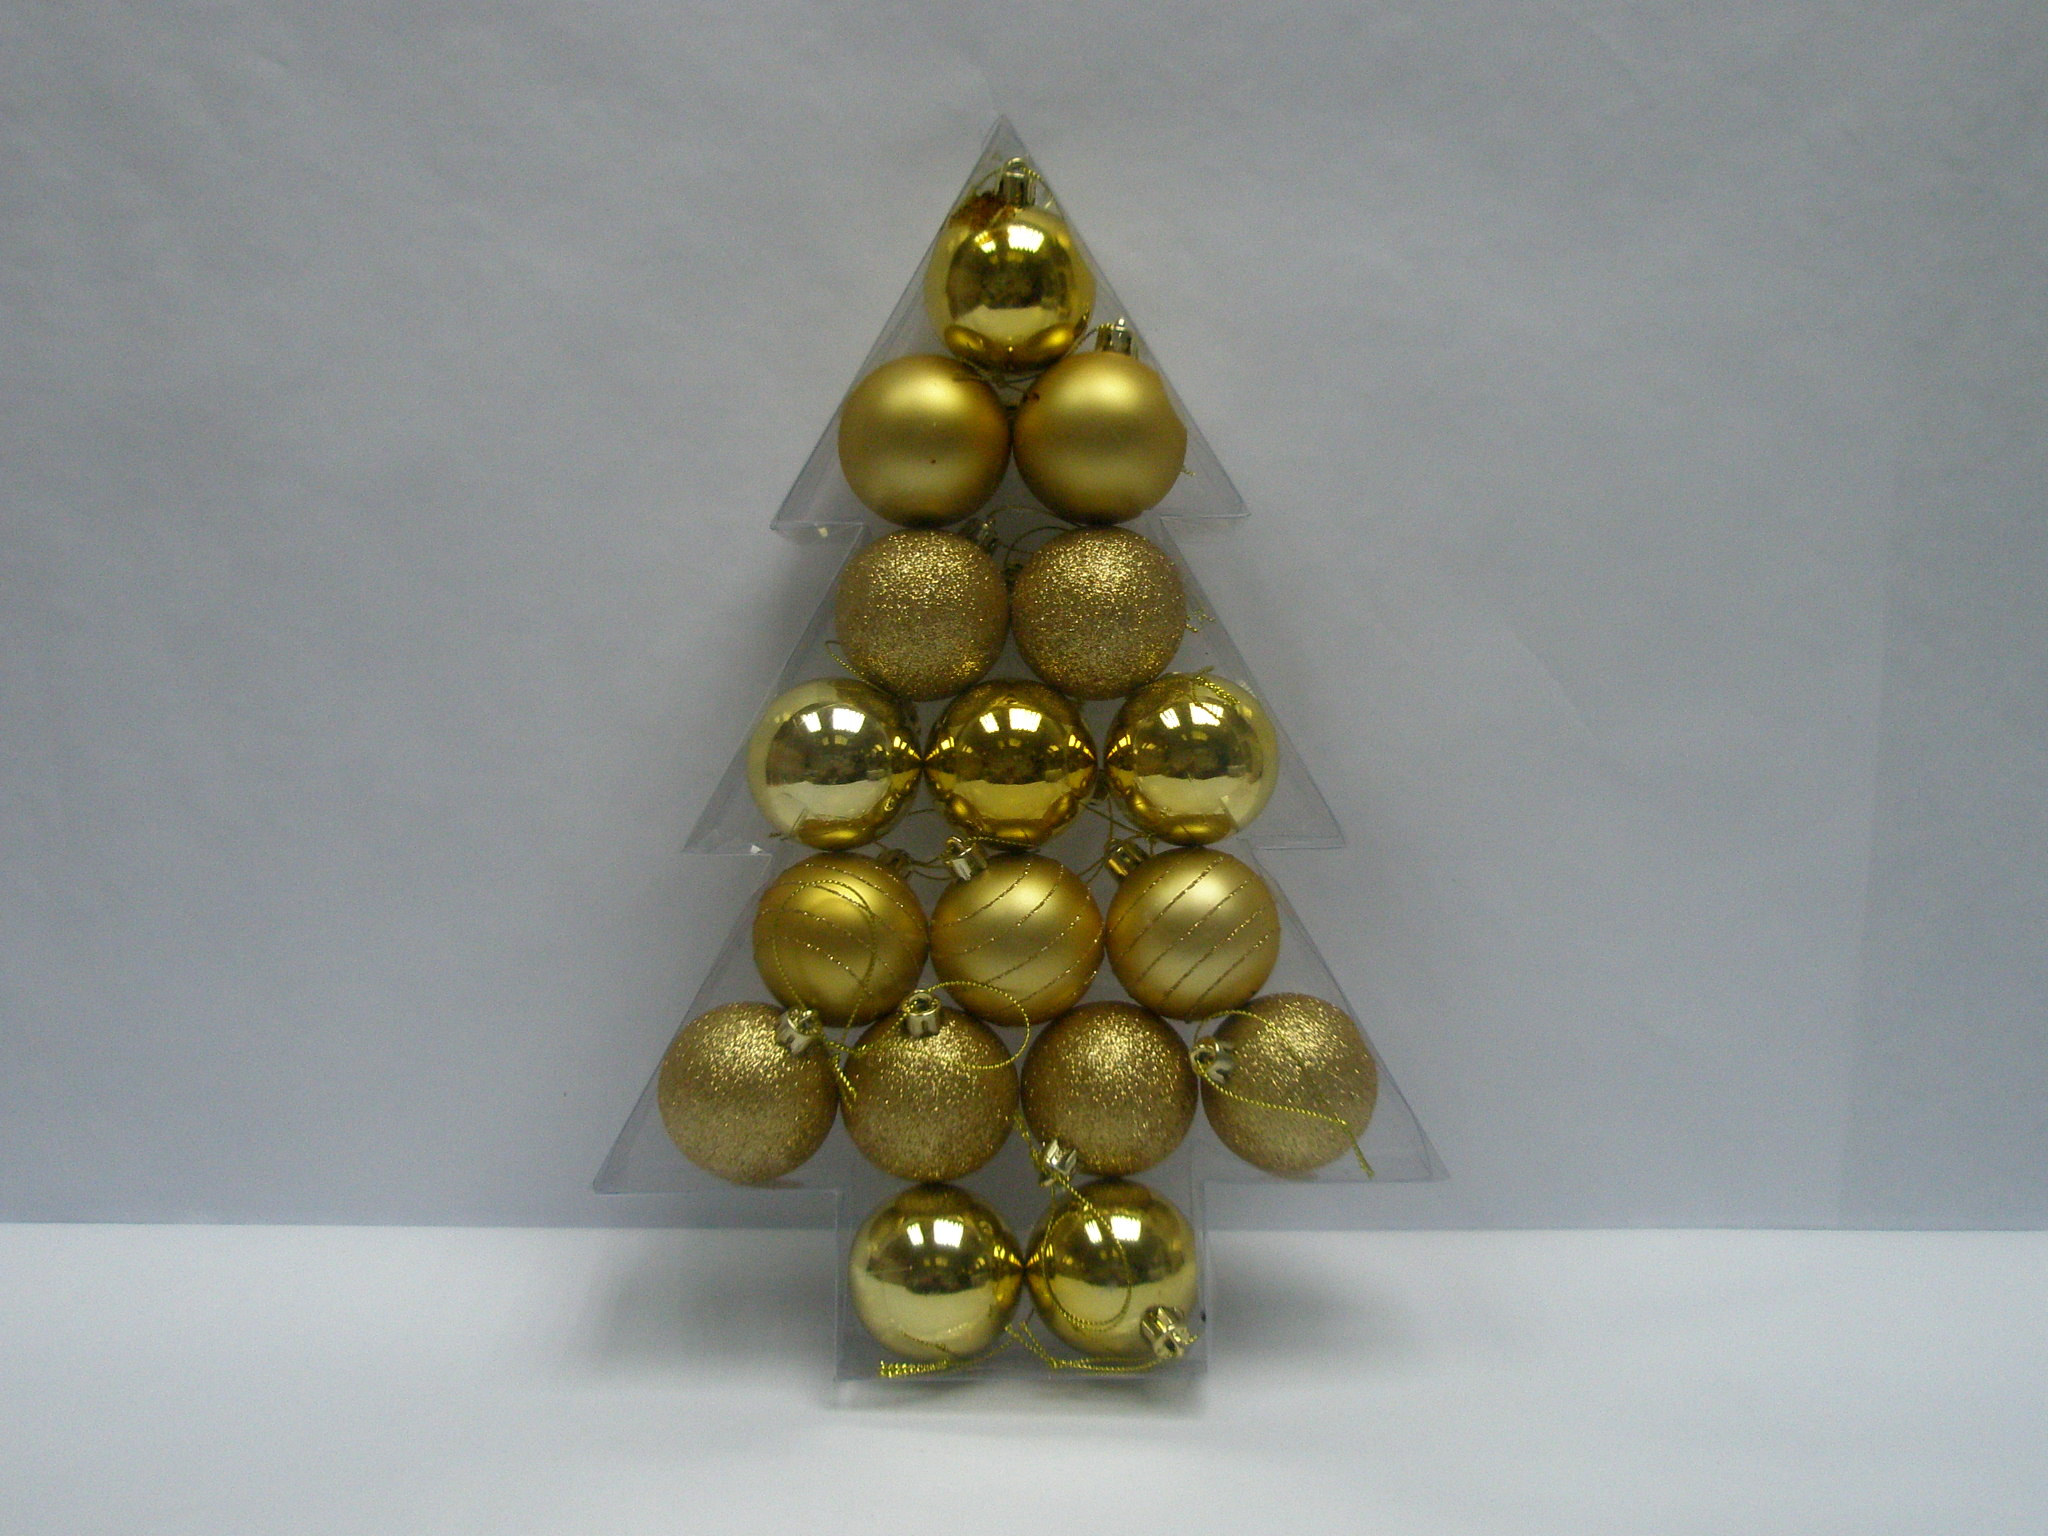 Promoción Navidad adornos bolas